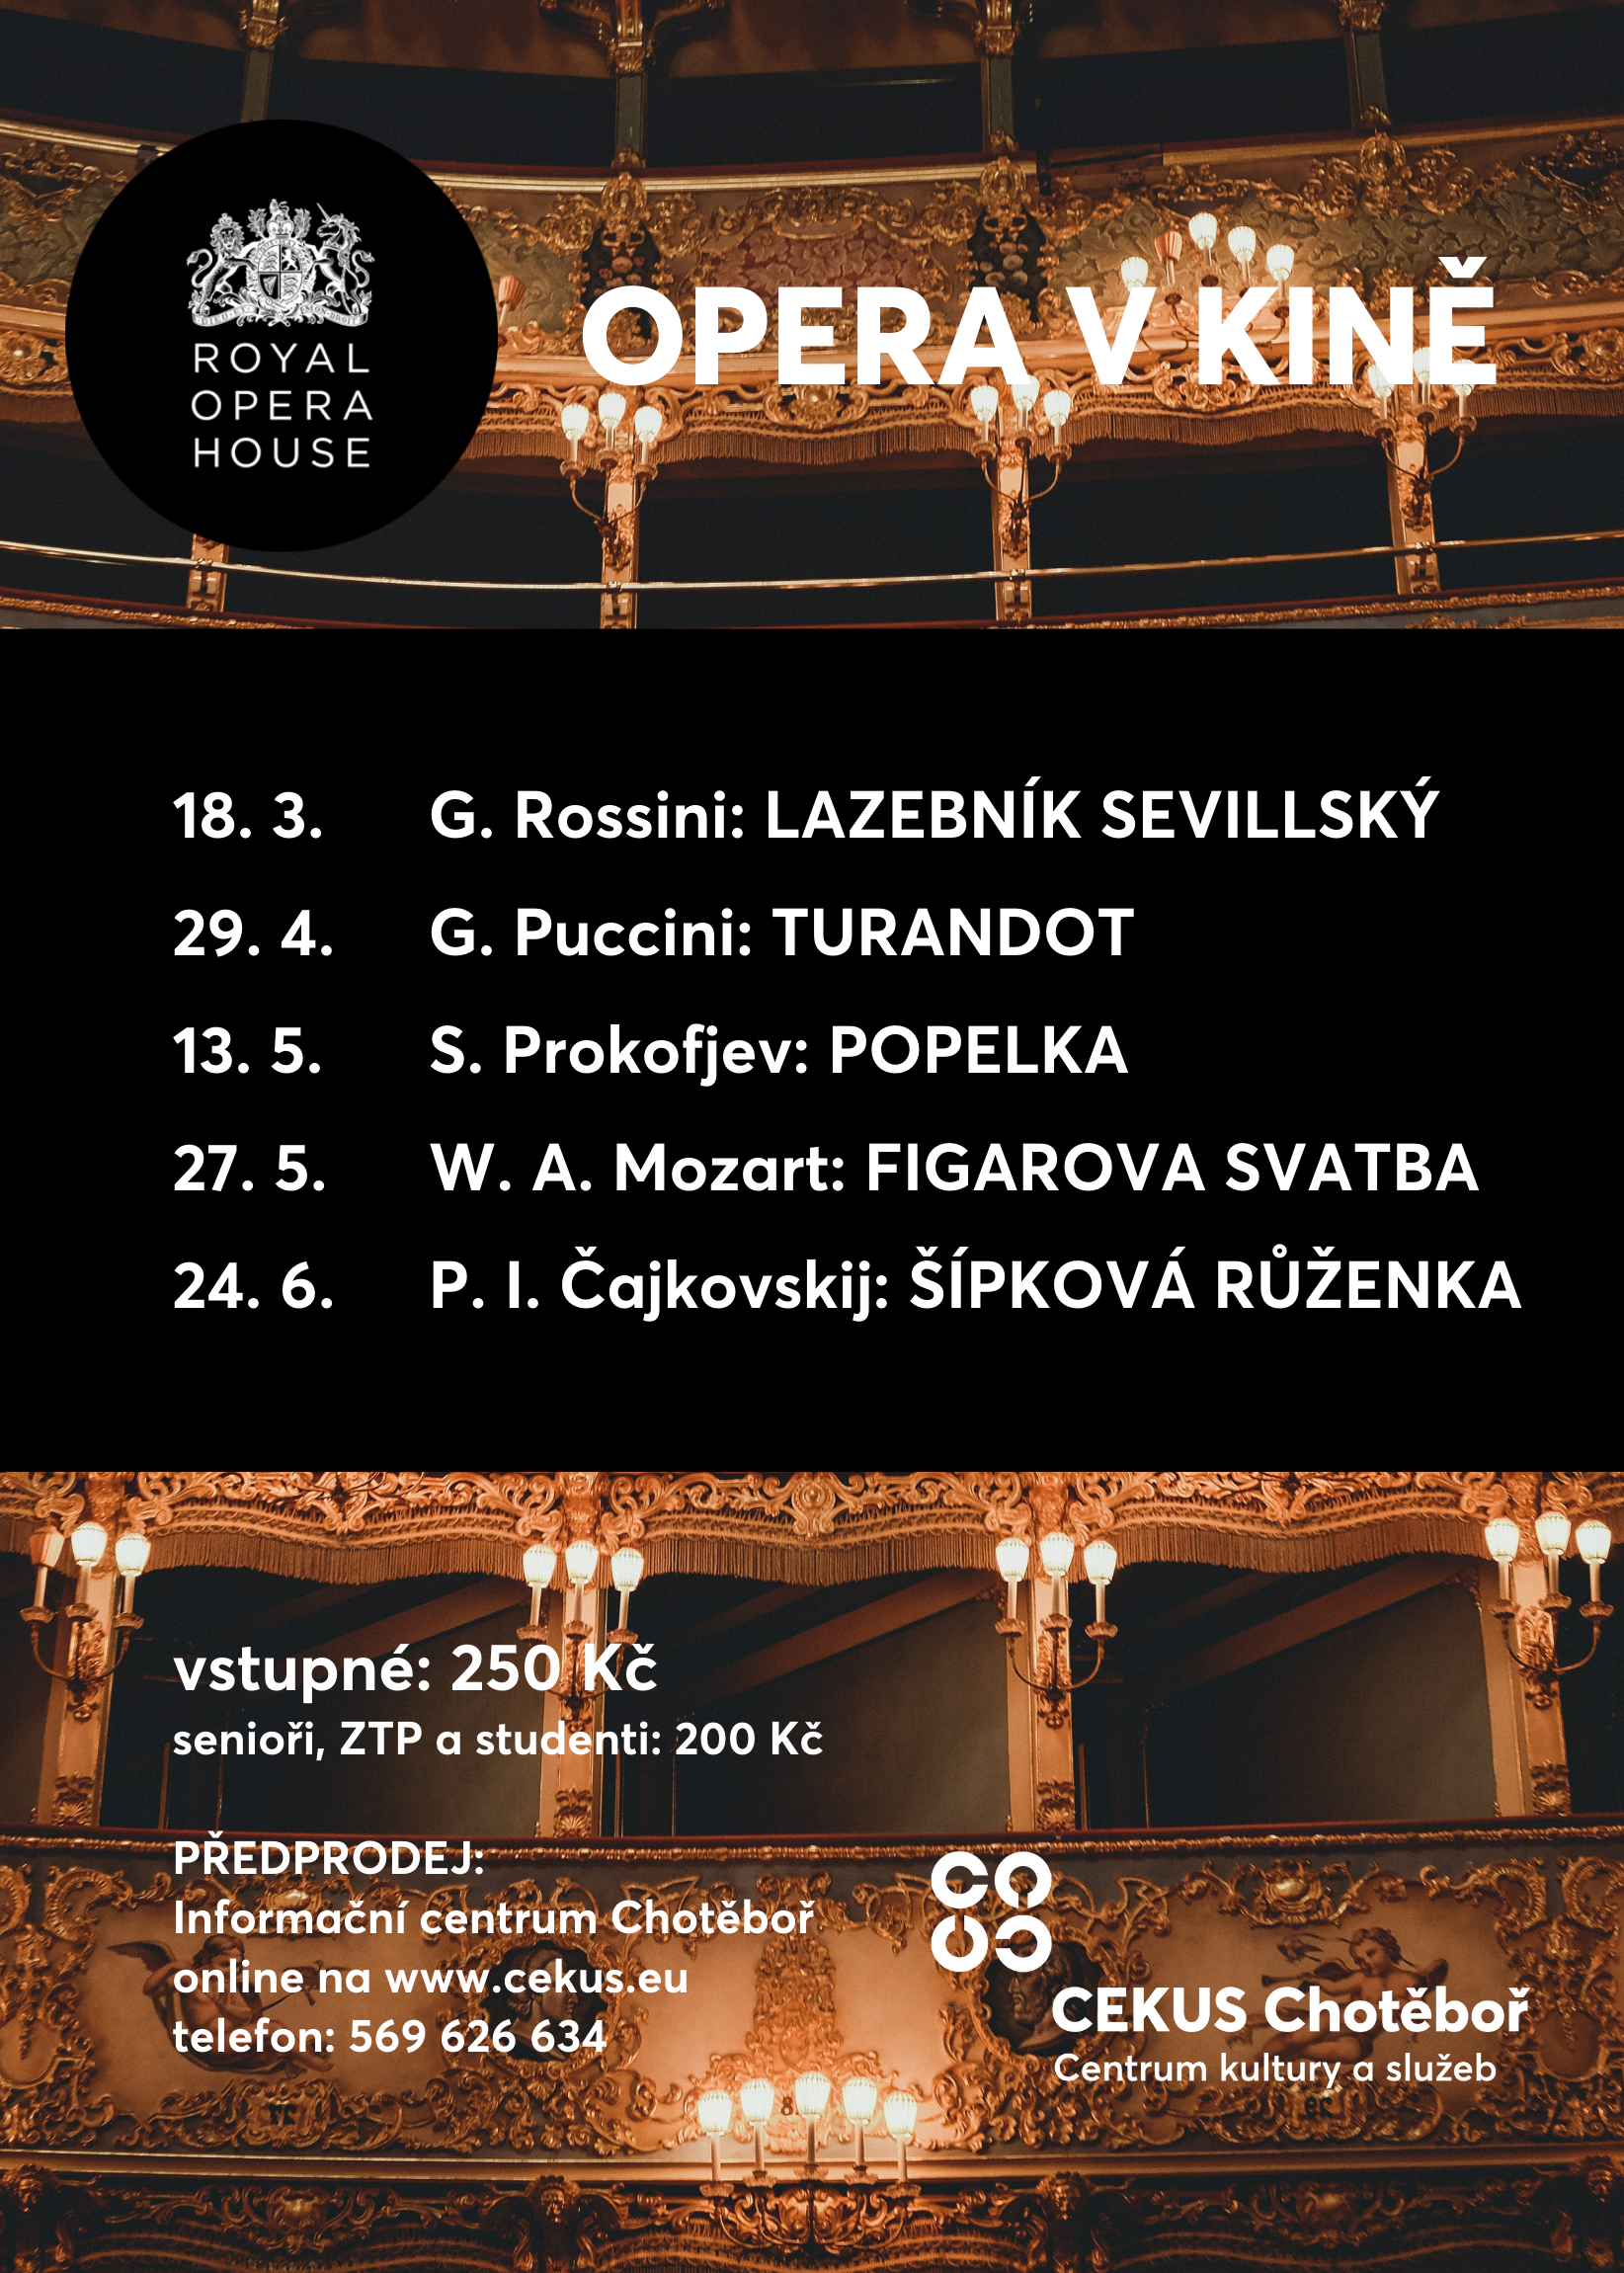 Opera-balet-v-kine-5